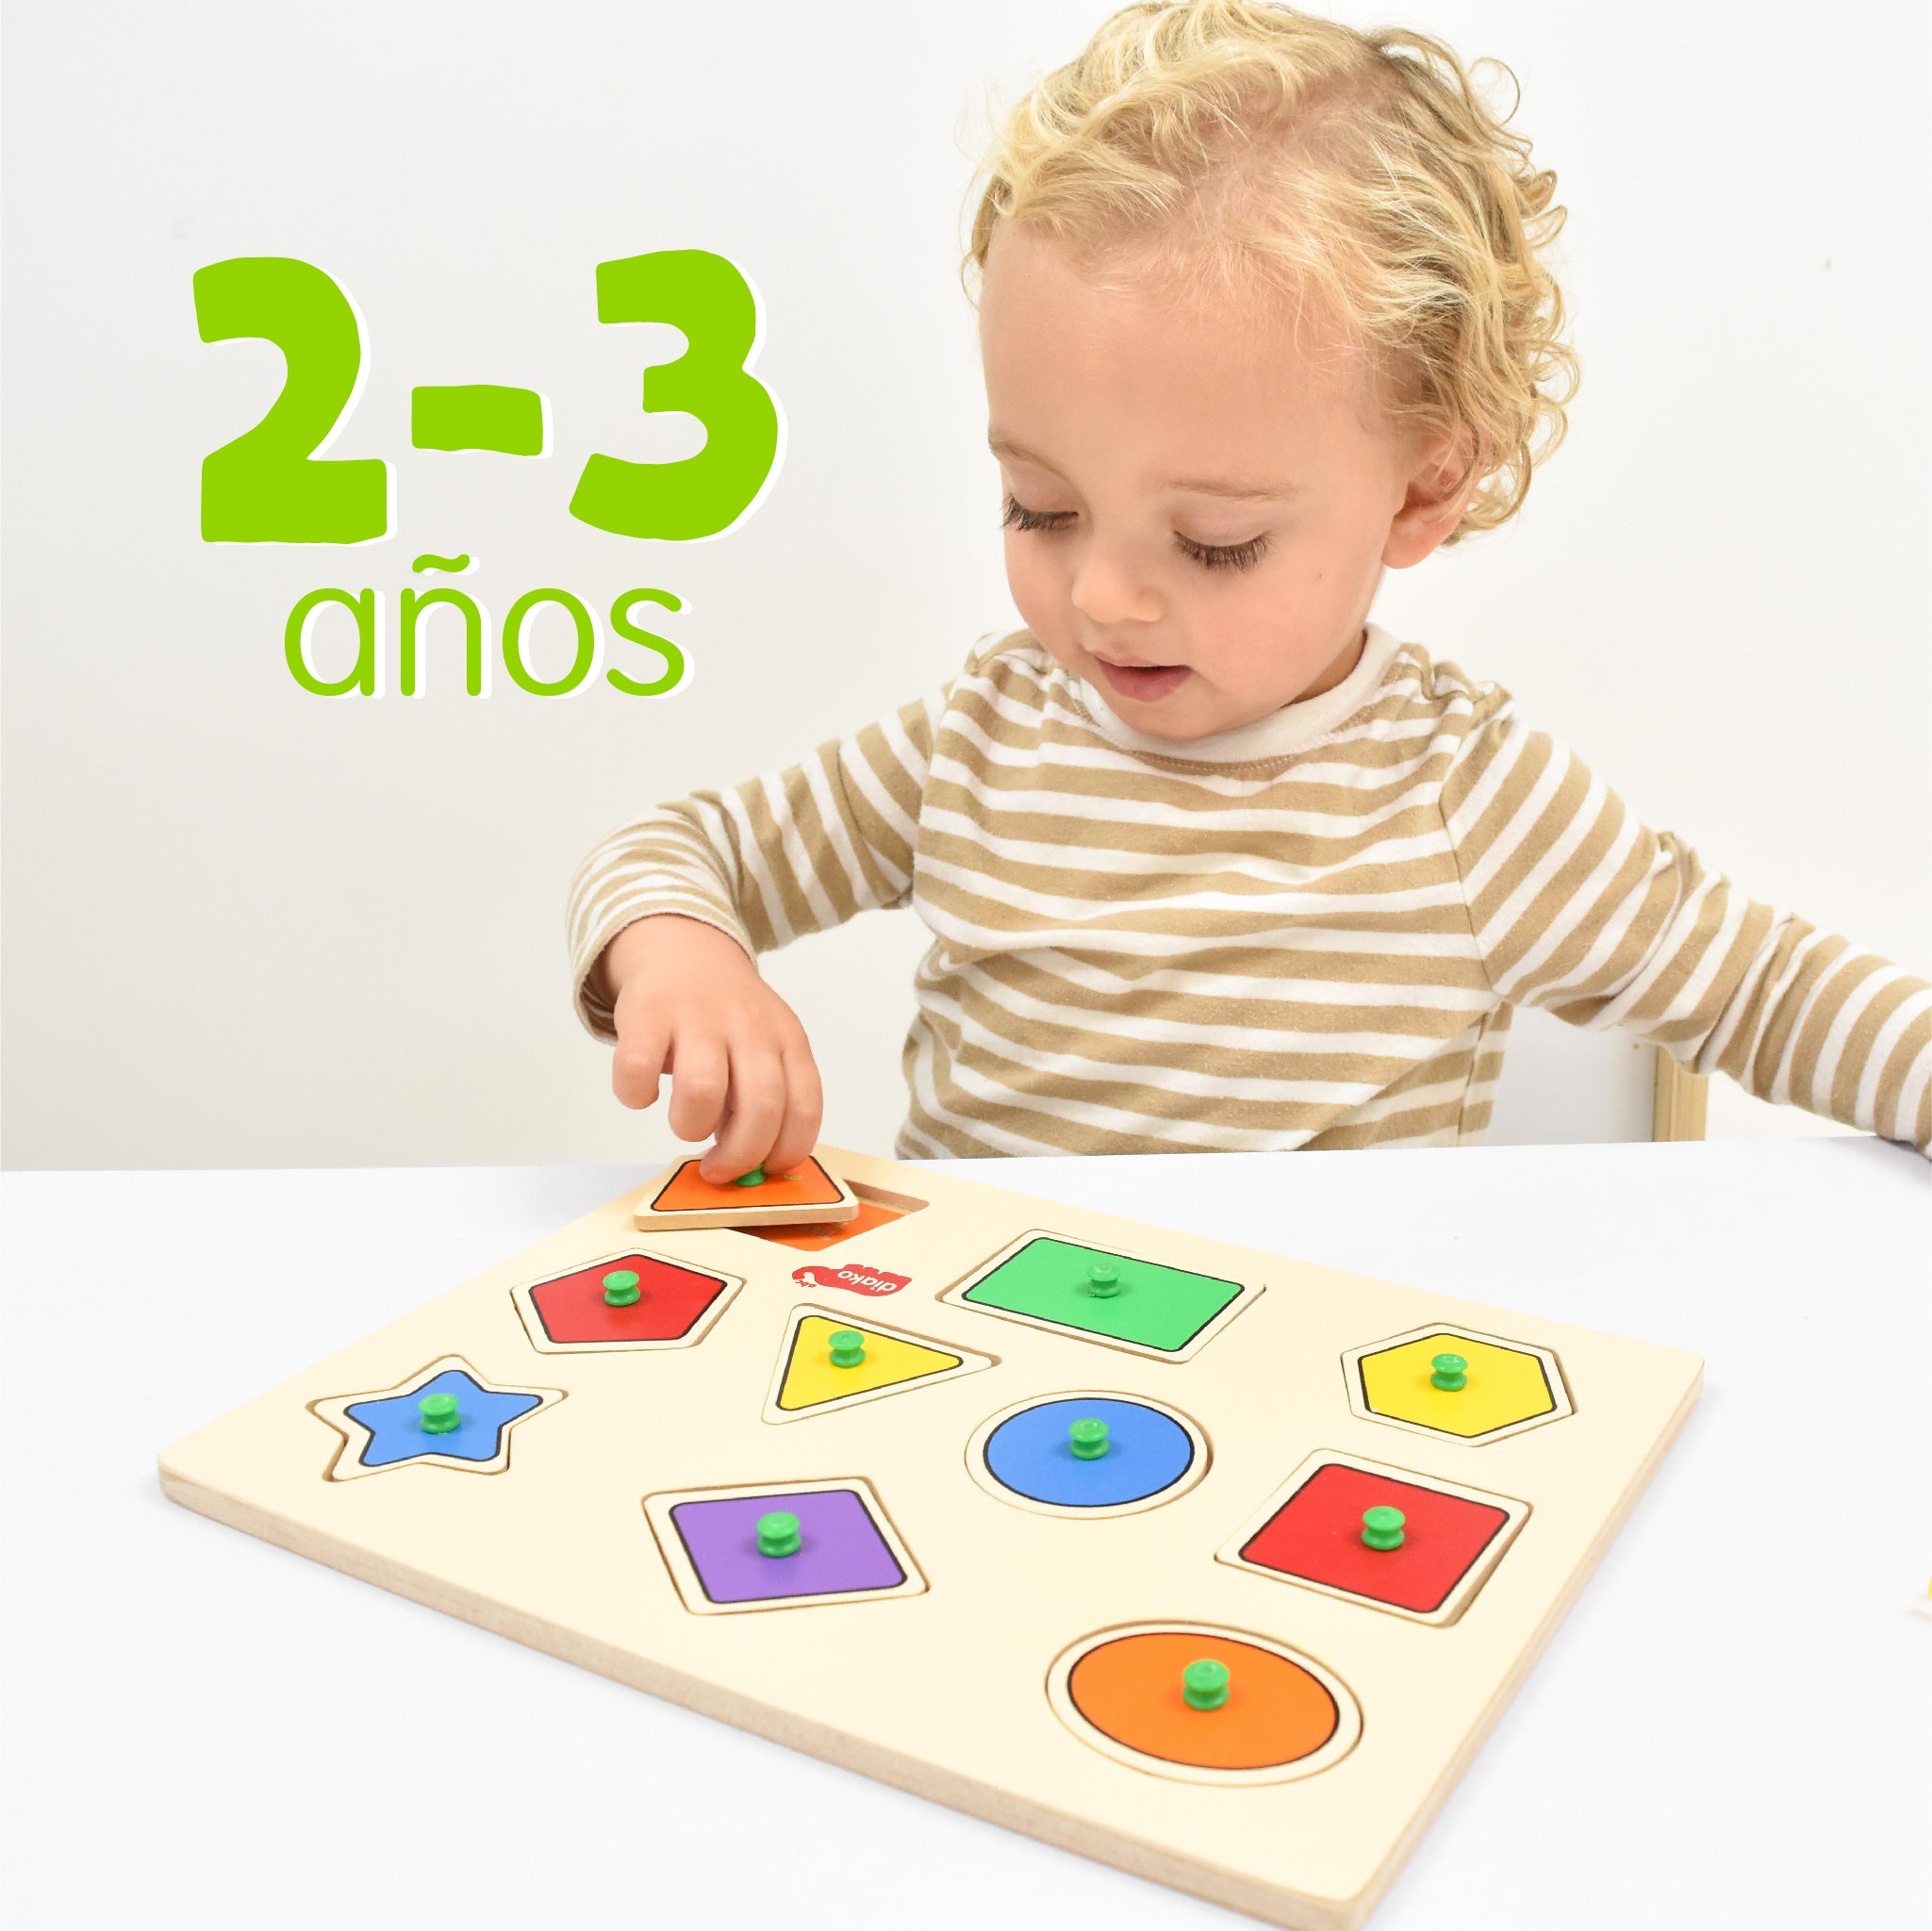 Juegos y Juguetes para Niños de 2 a 3 años Novedosos